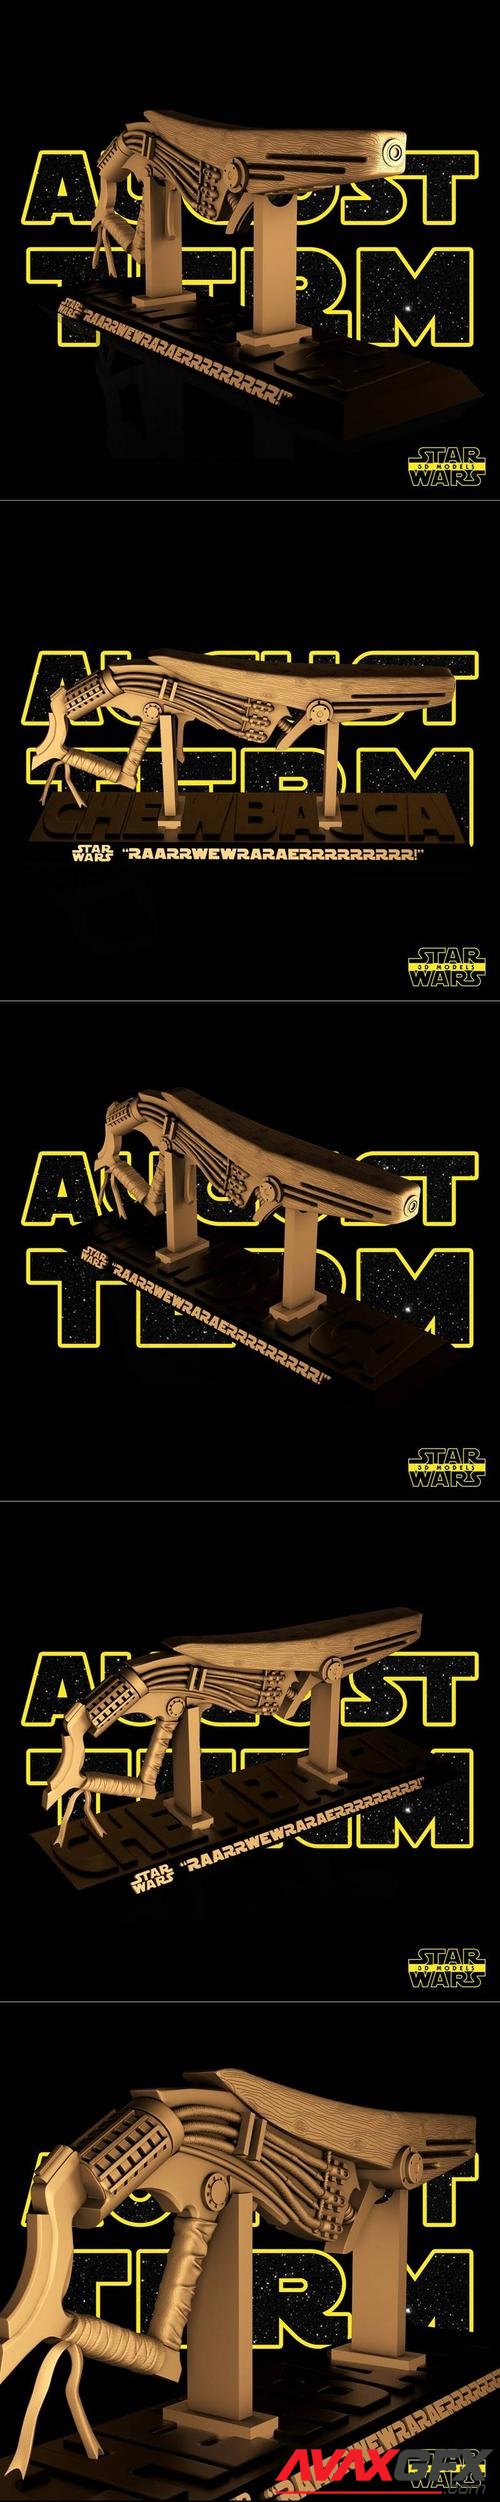 ﻿Star Wars – Chewbacca Slugthrower – 3D Printable STL